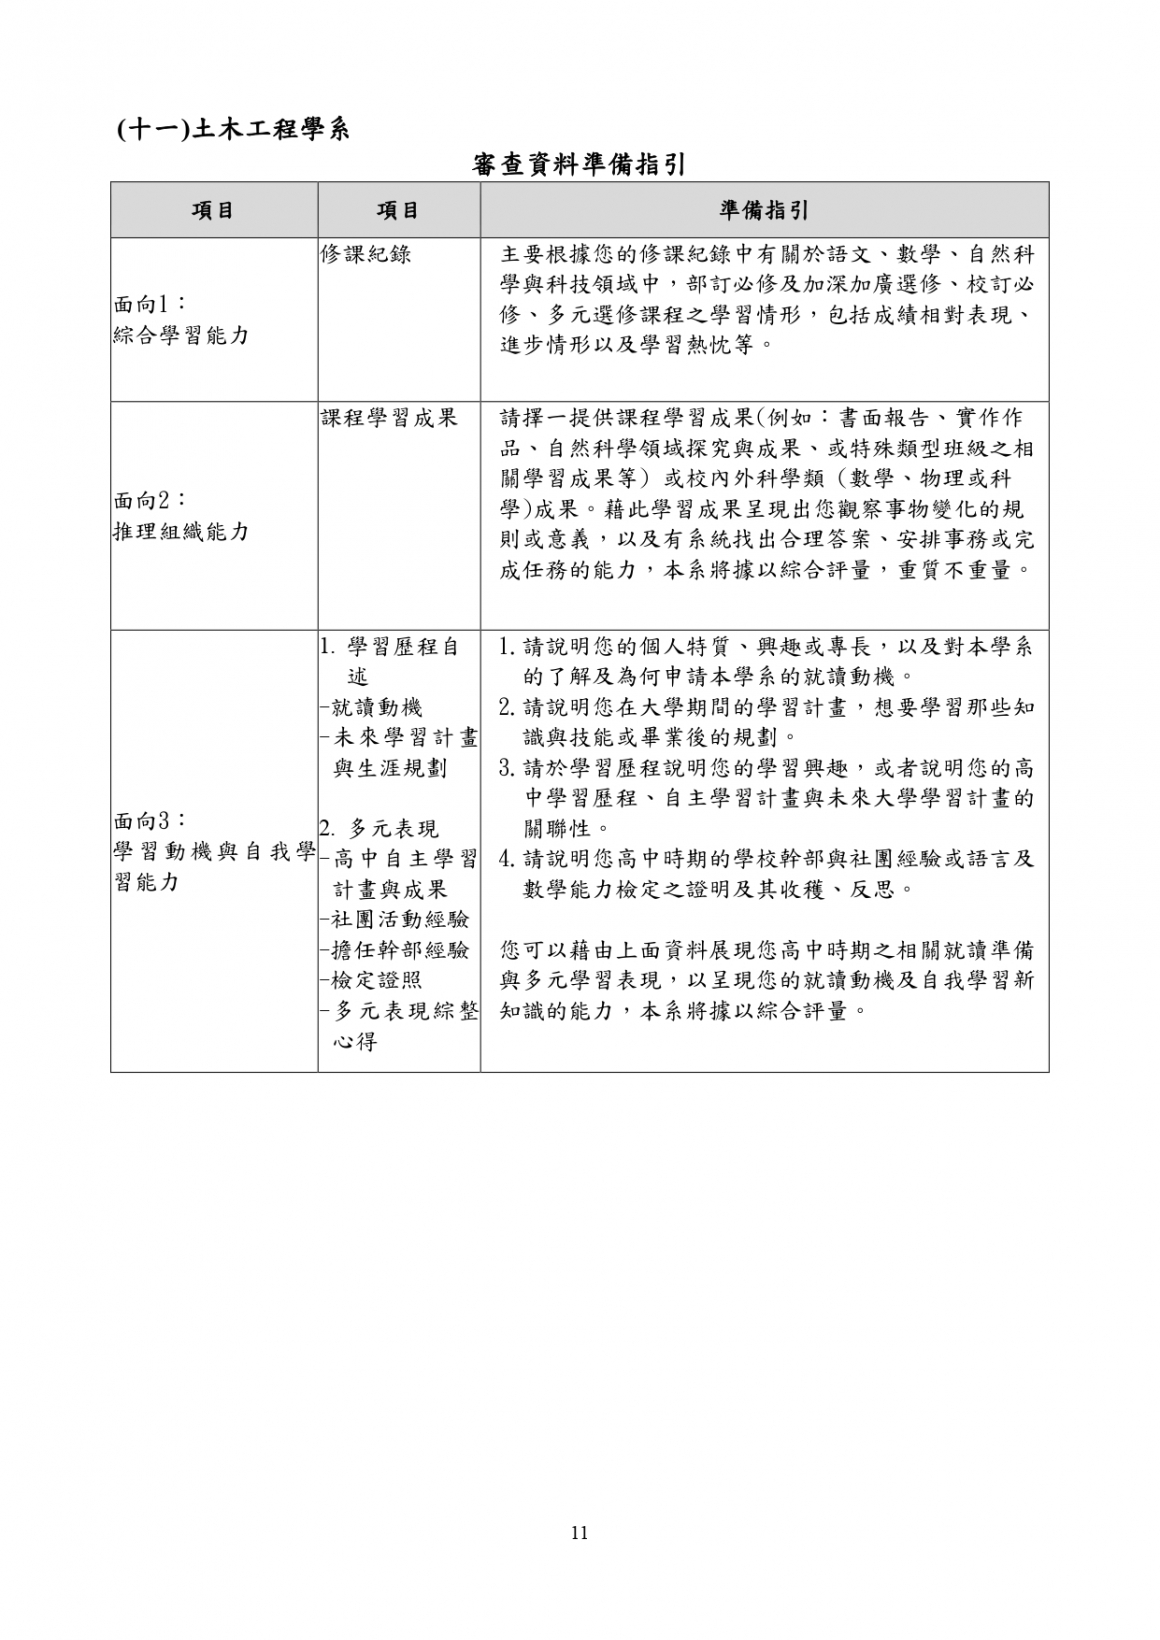 11_113土木工程學系_審查資料準備指引_page-0001